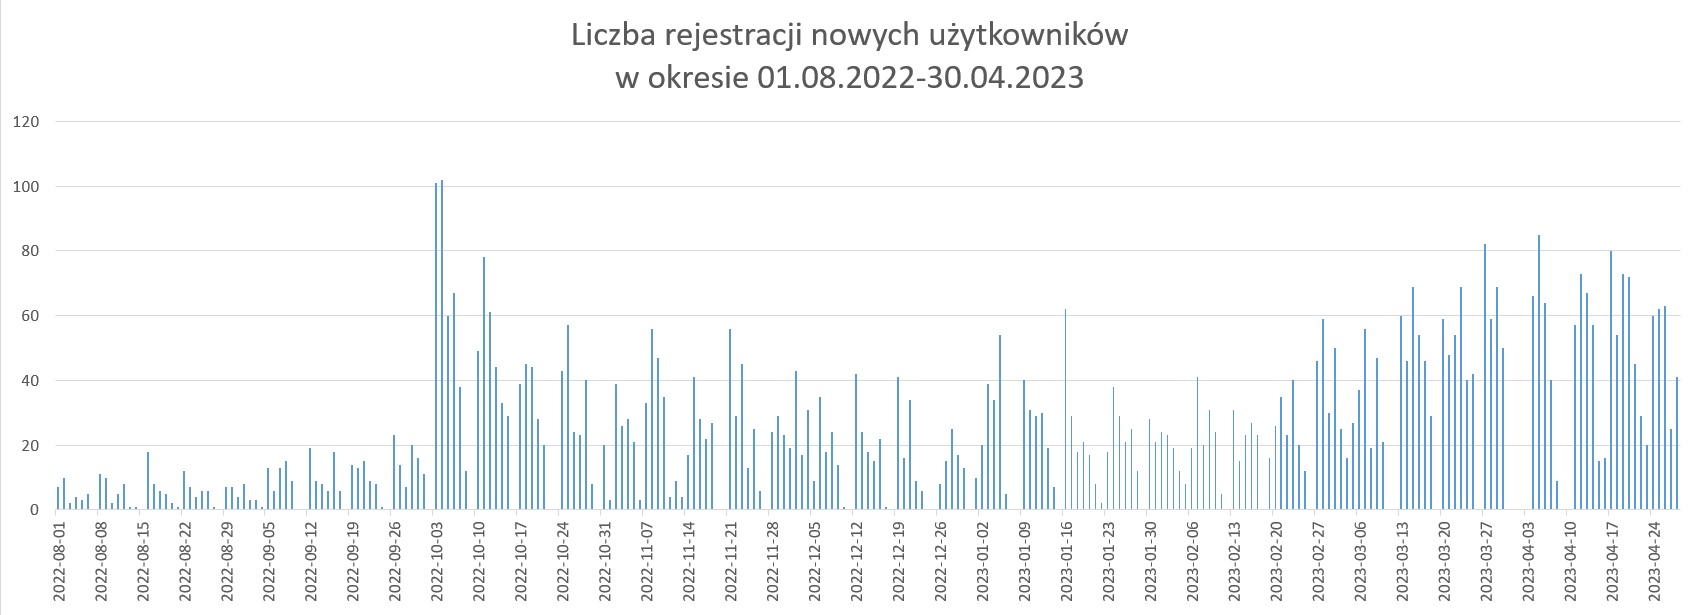 Wykres przedstawia dzienną liczbę rejestracji w okresie 01.08.2022-30.04.2023